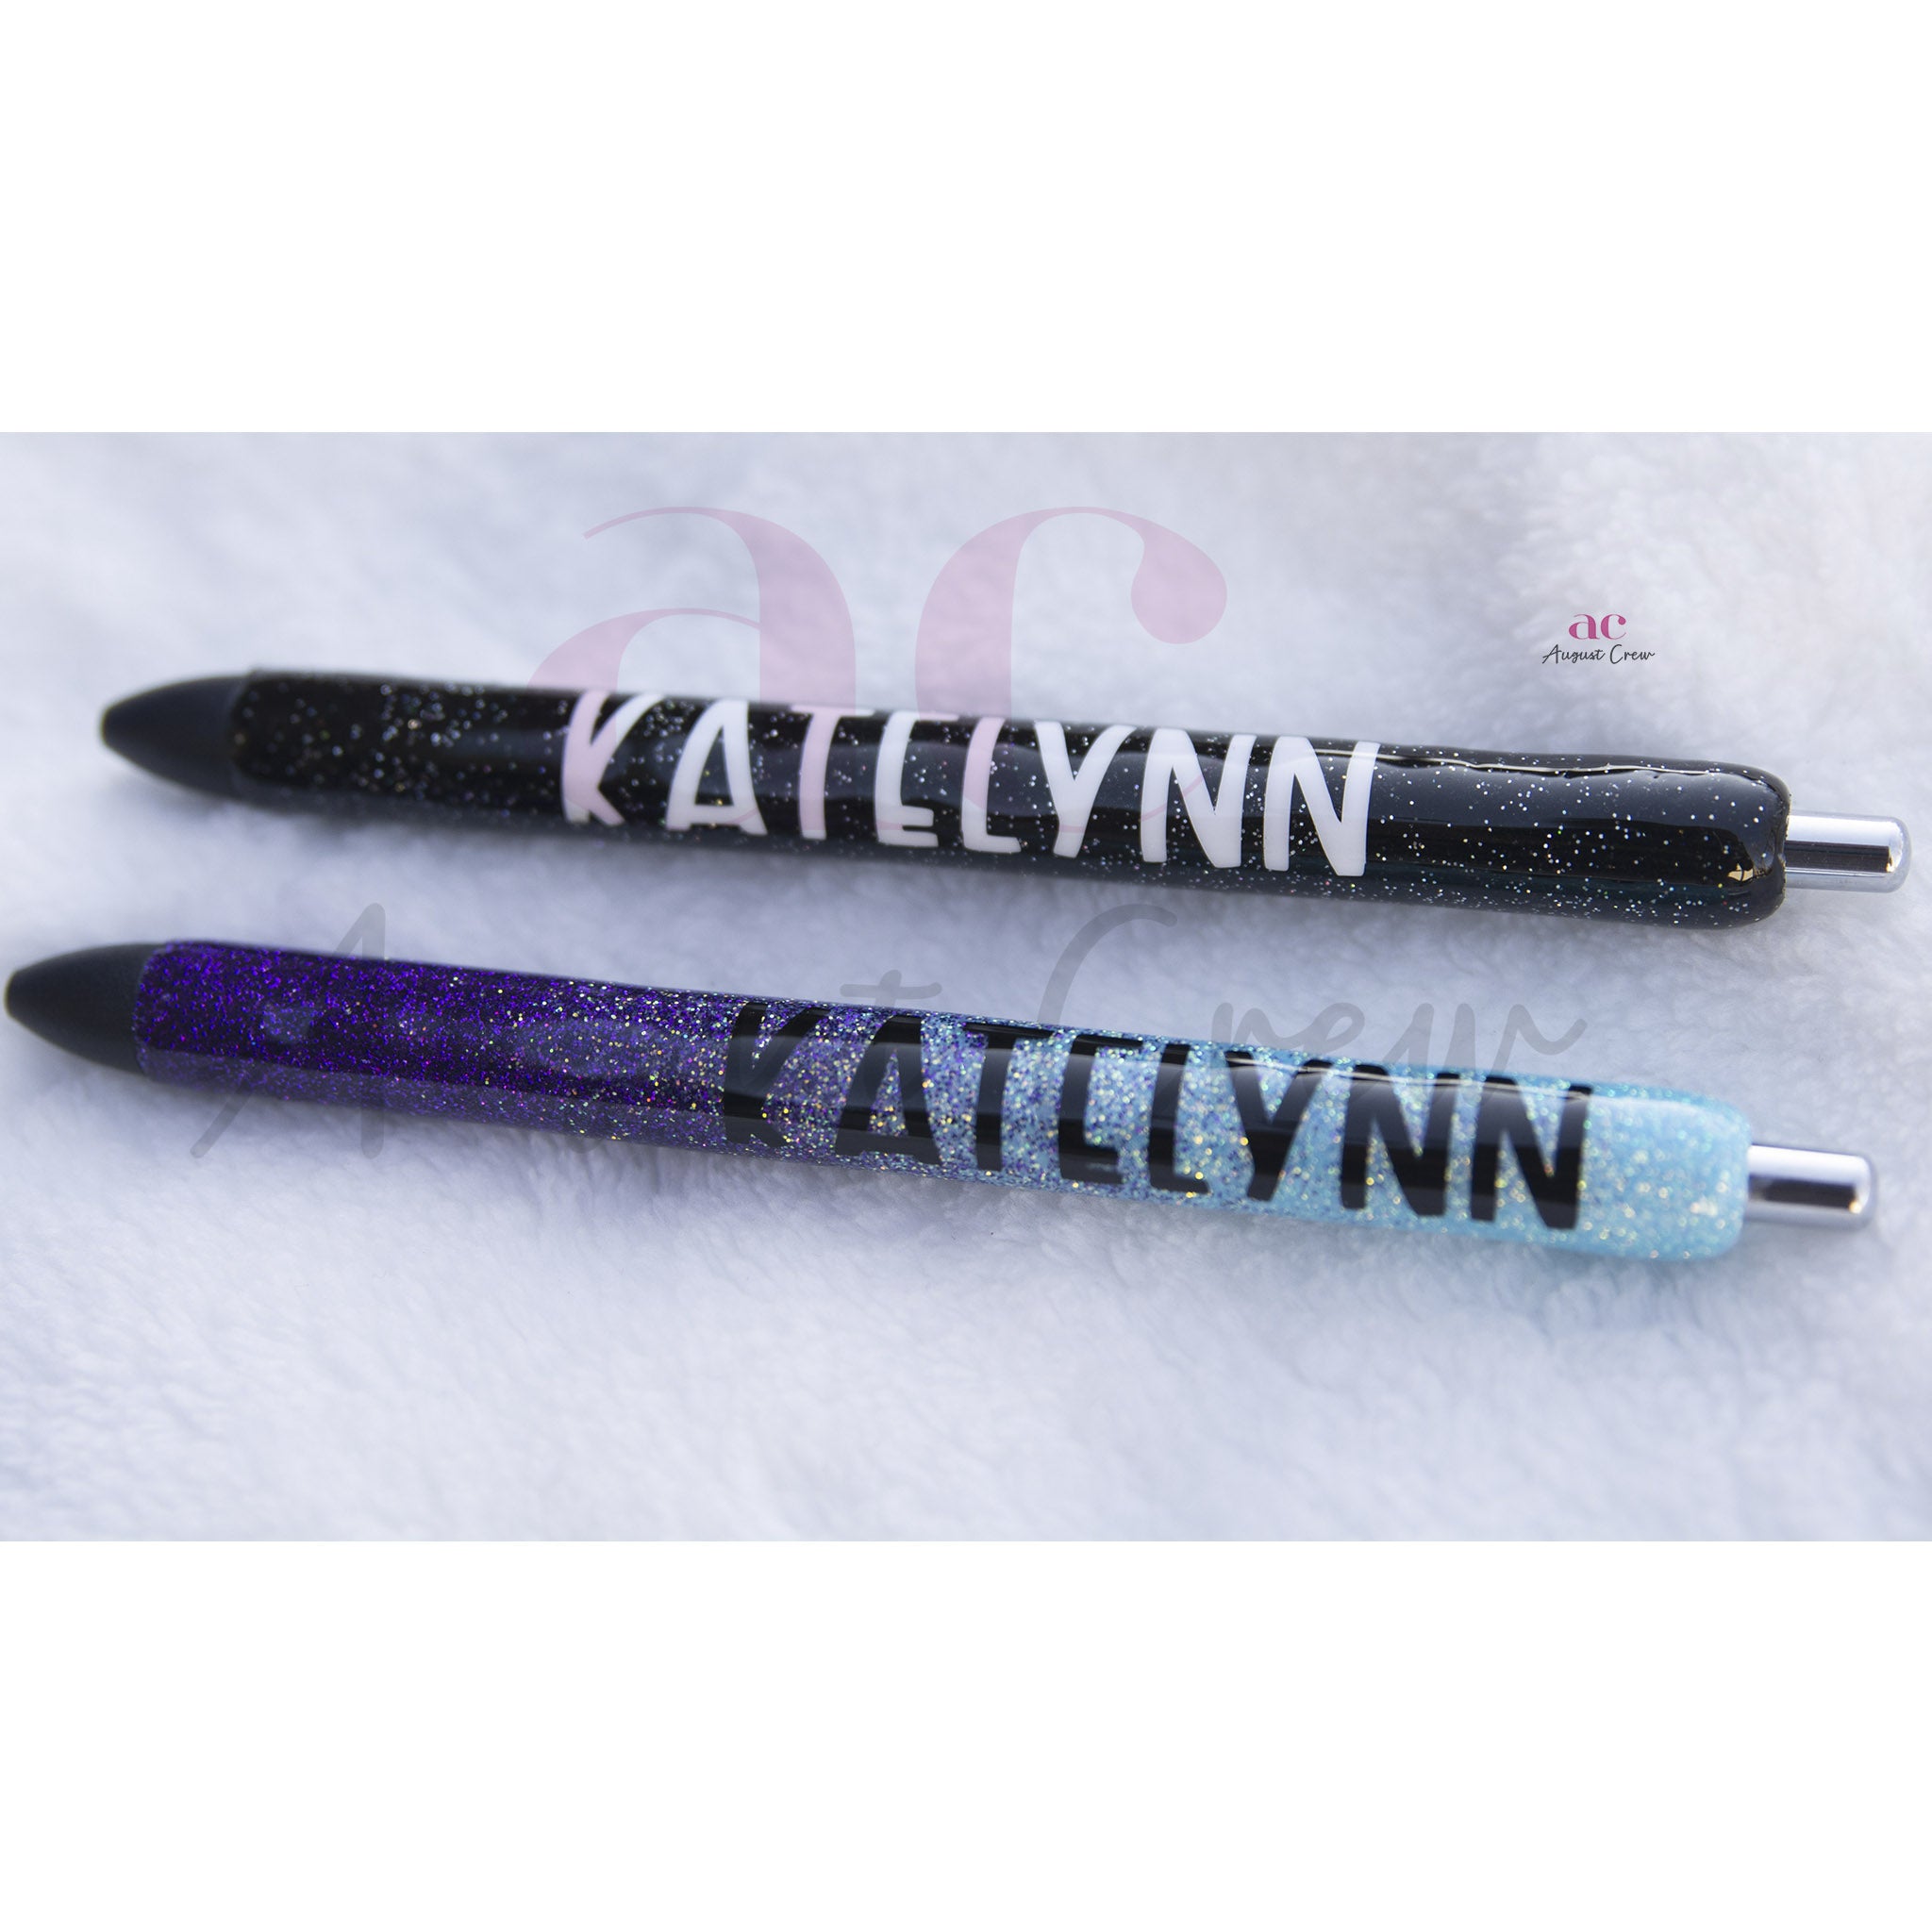 Custom Glitter Pen